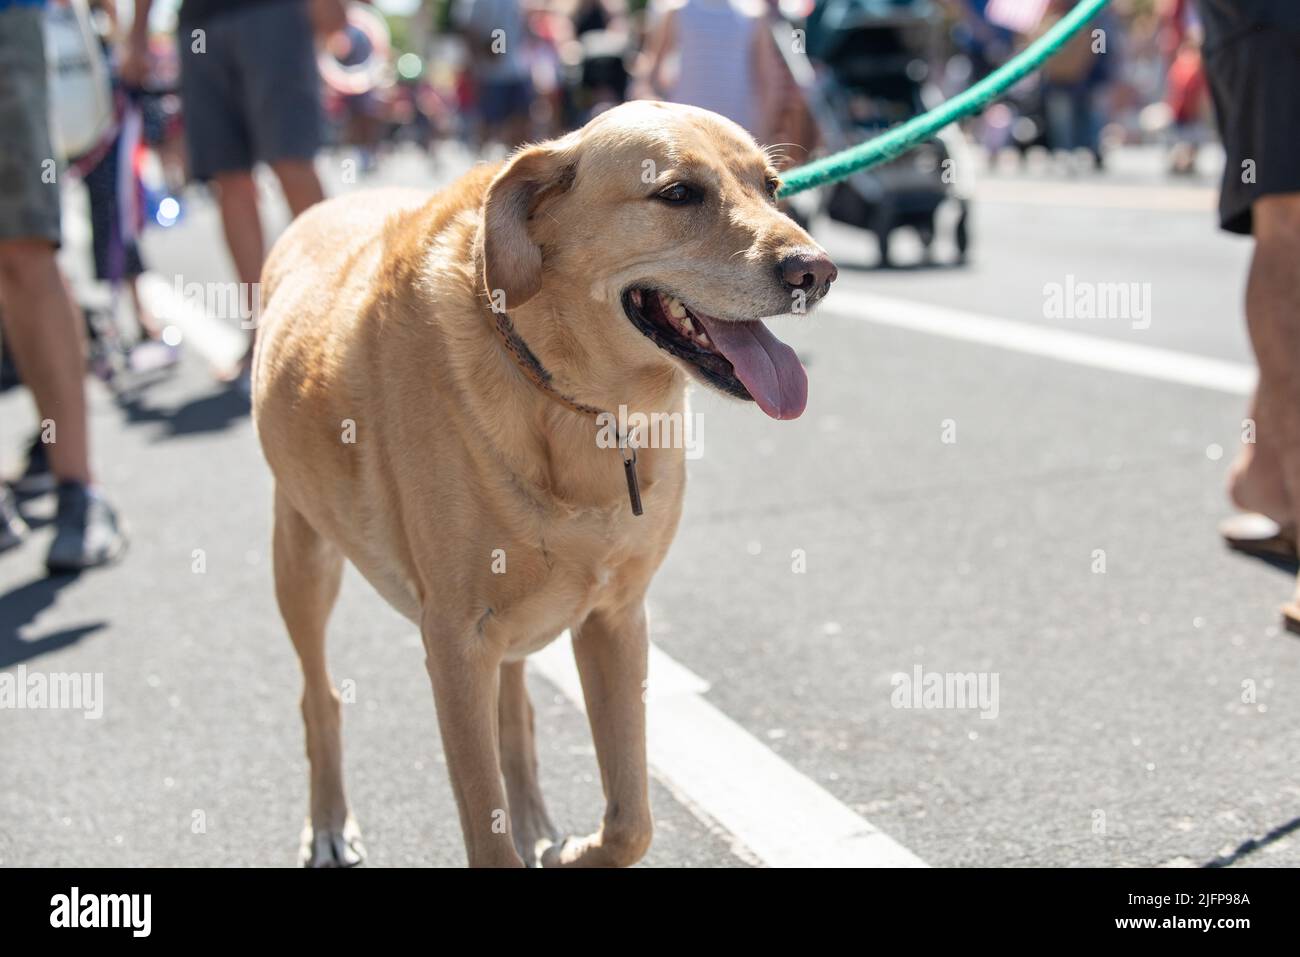 Die Holiday Parade in einer kleinen Stadt ist der perfekte Ort, um mit dem labrador-Mischlingshund mitten auf der Straße spazieren zu gehen. Stockfoto